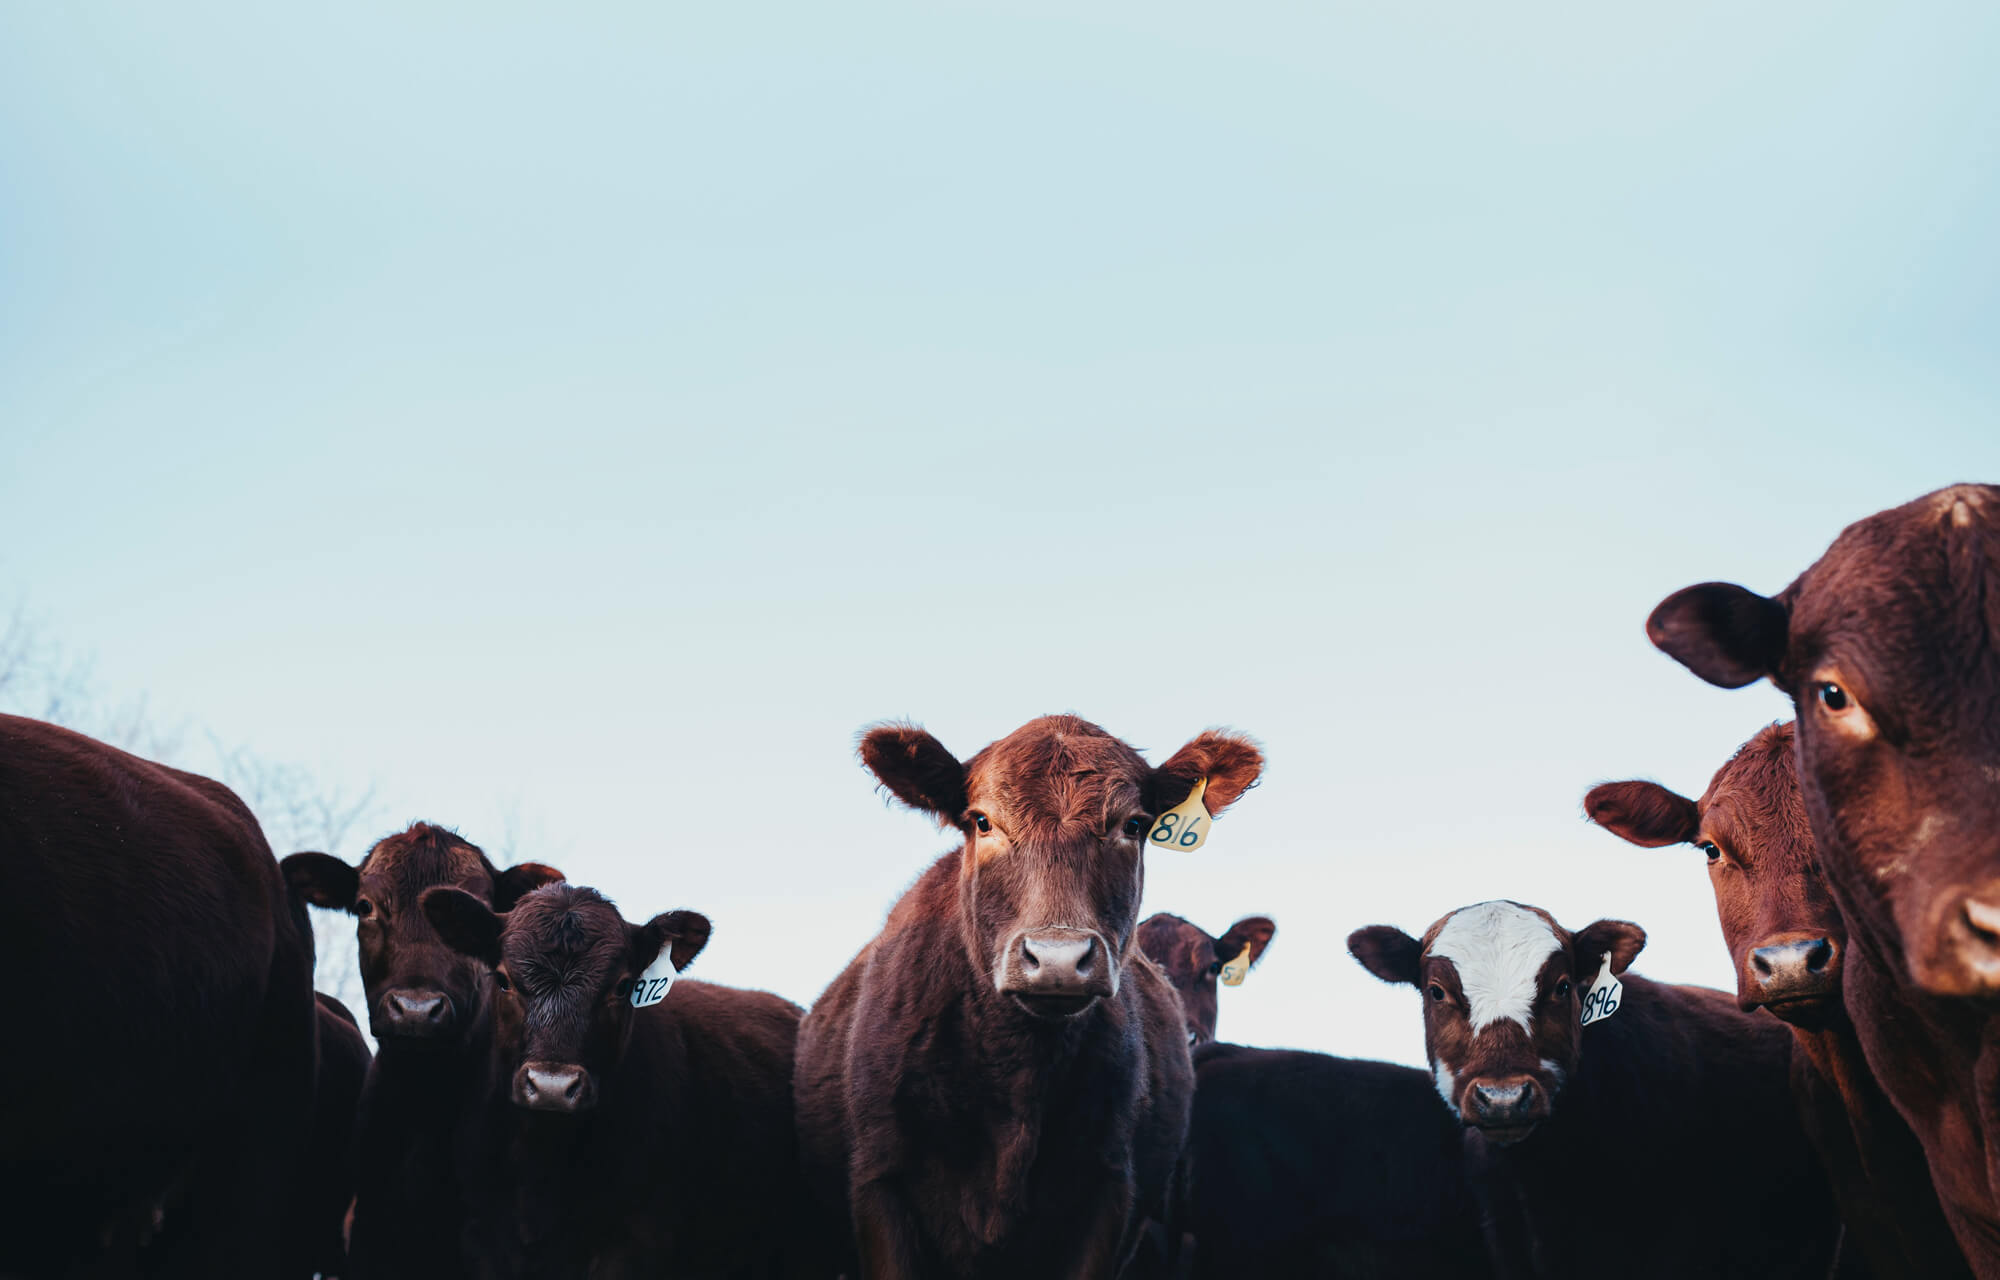 cows staring down at camera